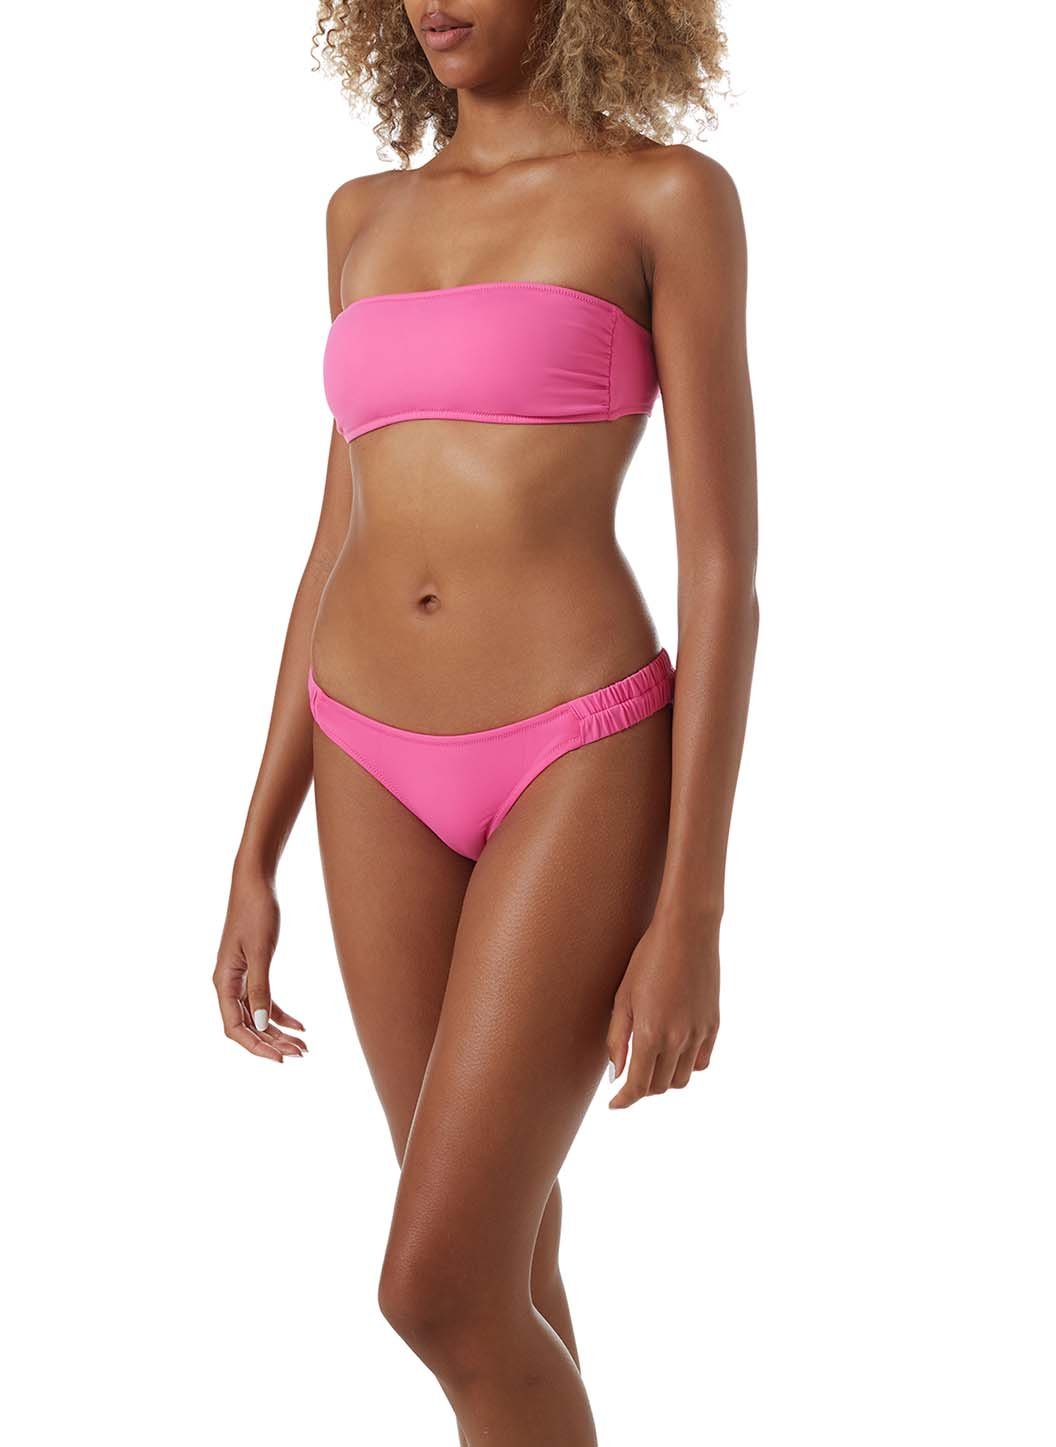 straal hanger Leia Melissa Odabash Trieste Hot Pink Ruched Bandeau Bikini | Official Website